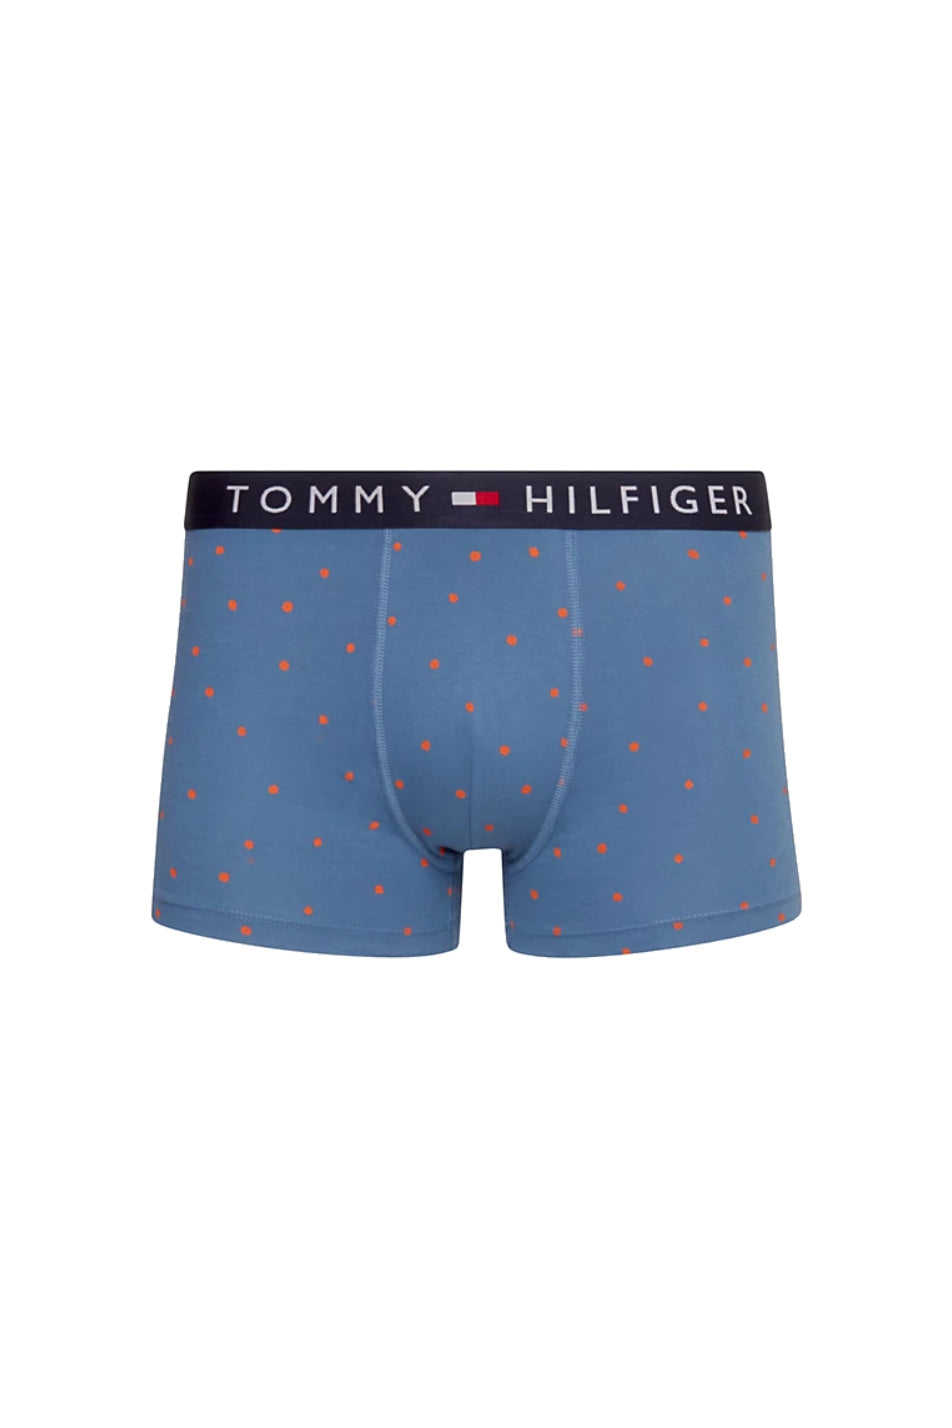 Tommy Hilfiger Men's Trunk & Sock Set